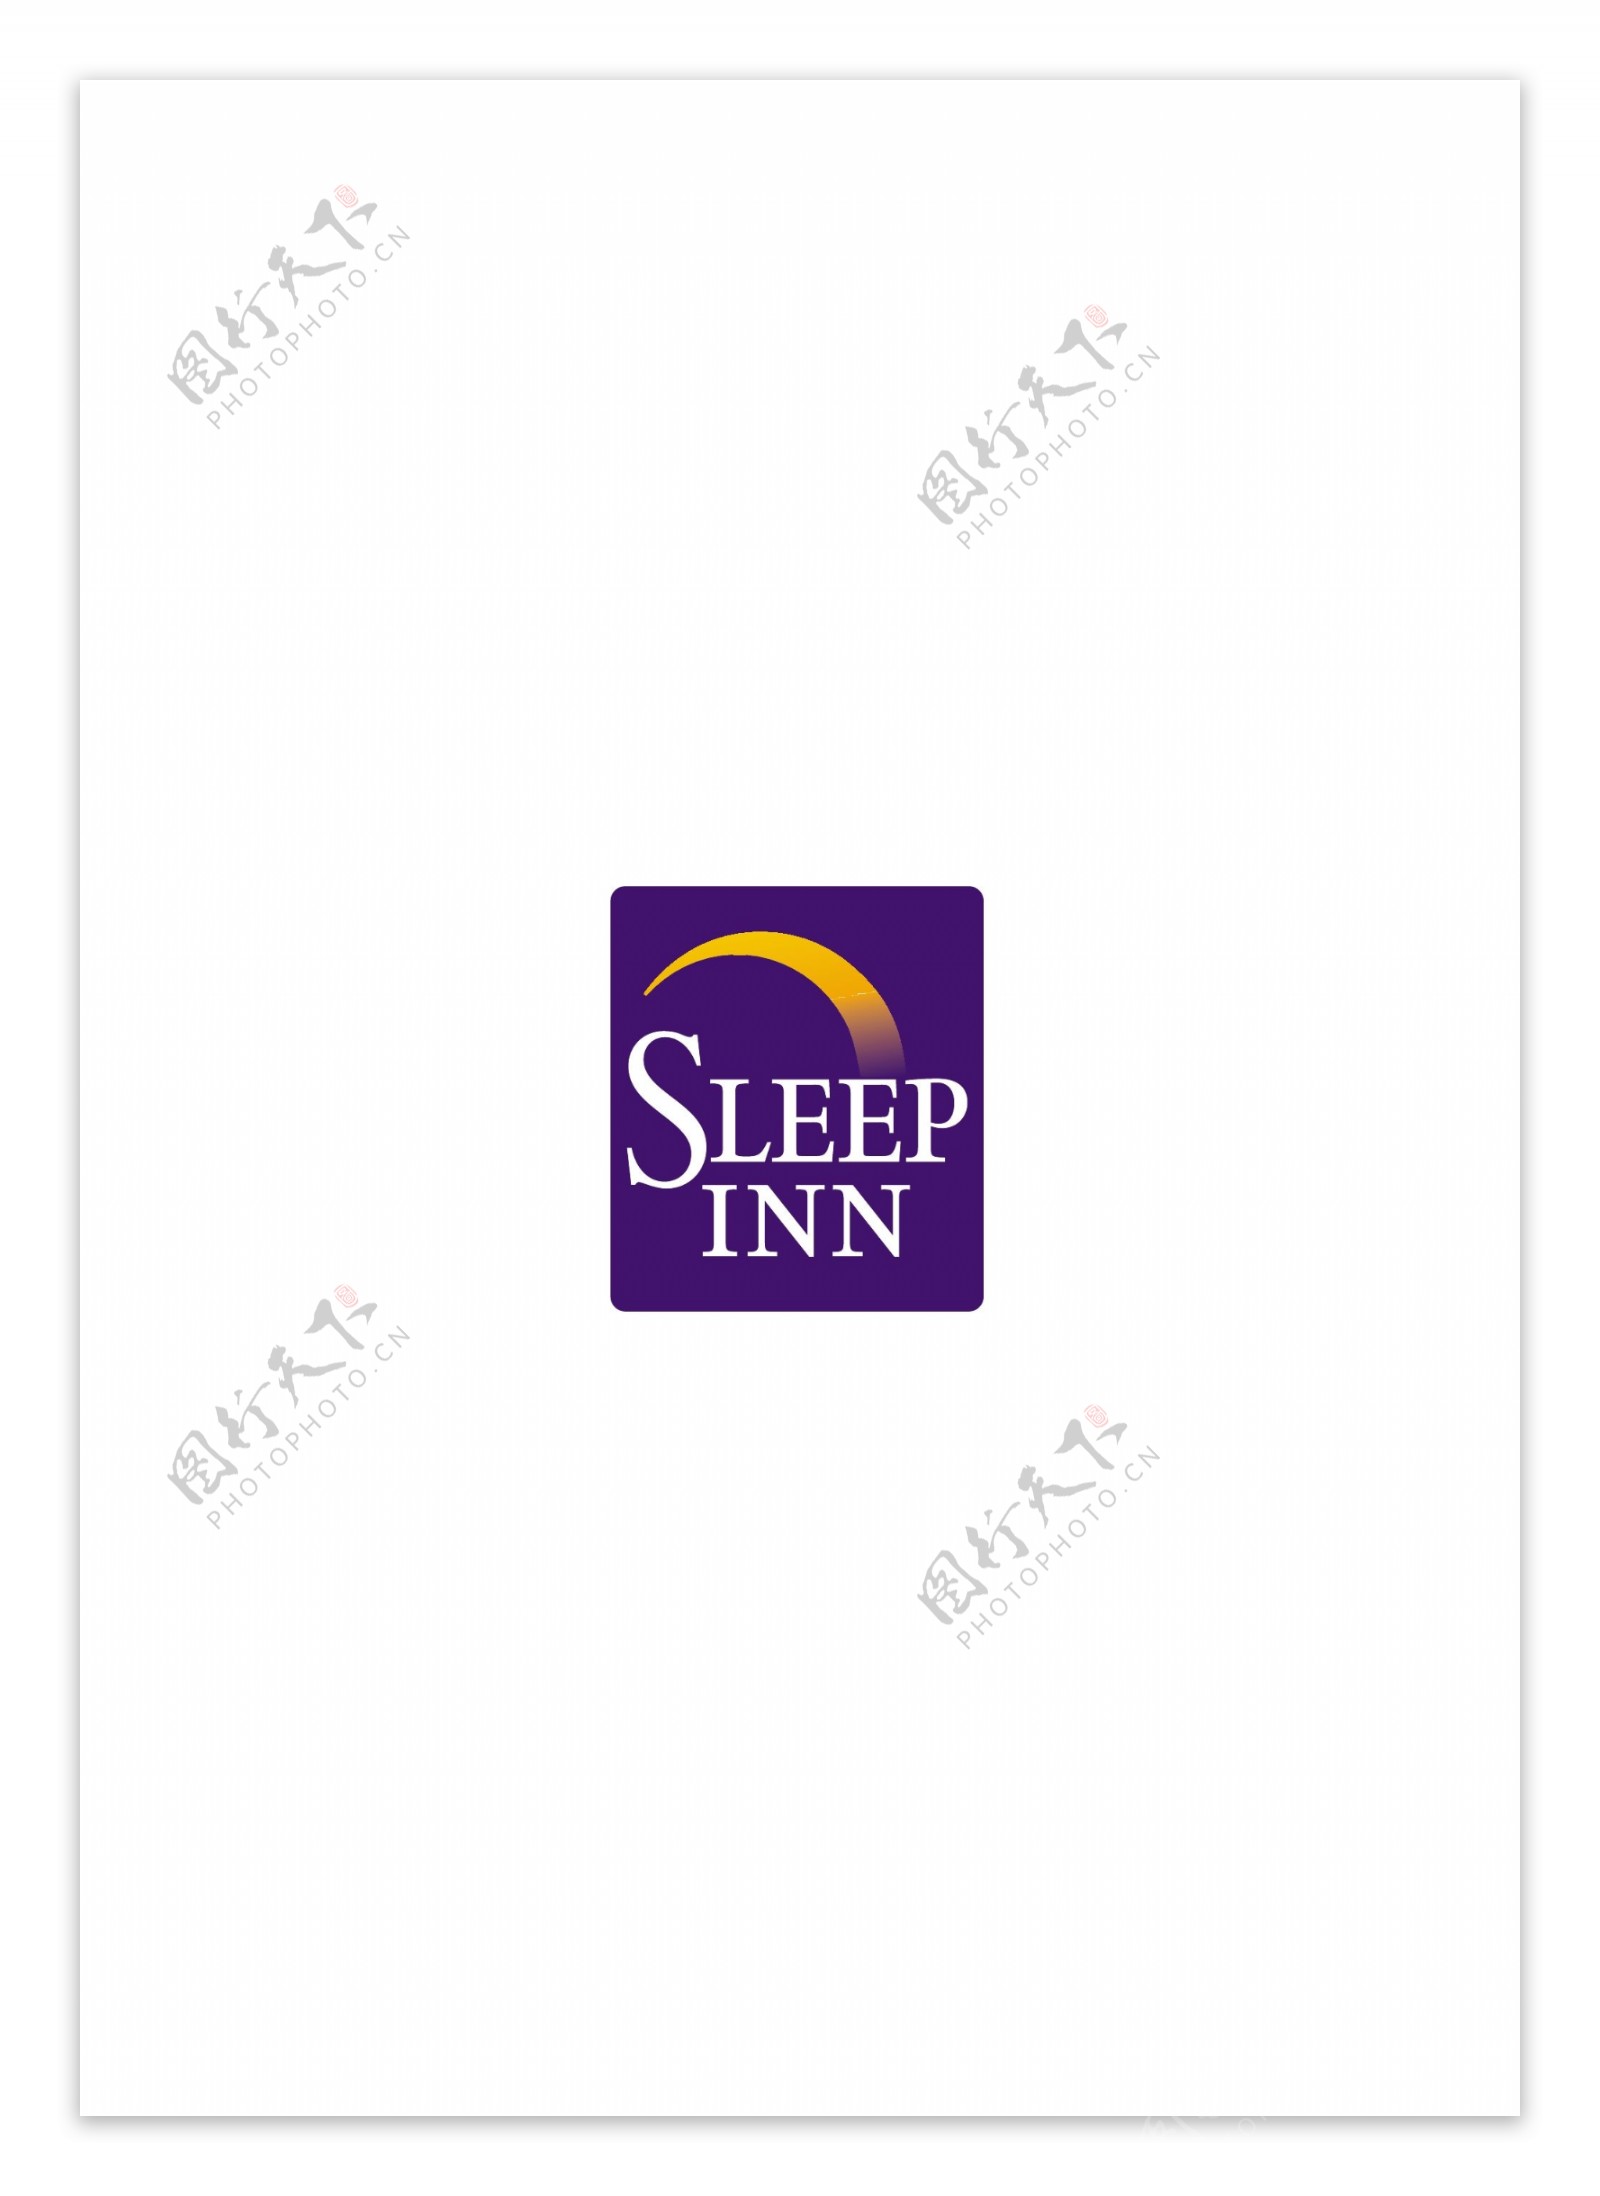 SleepInnlogo设计欣赏SleepInn大饭店标志下载标志设计欣赏